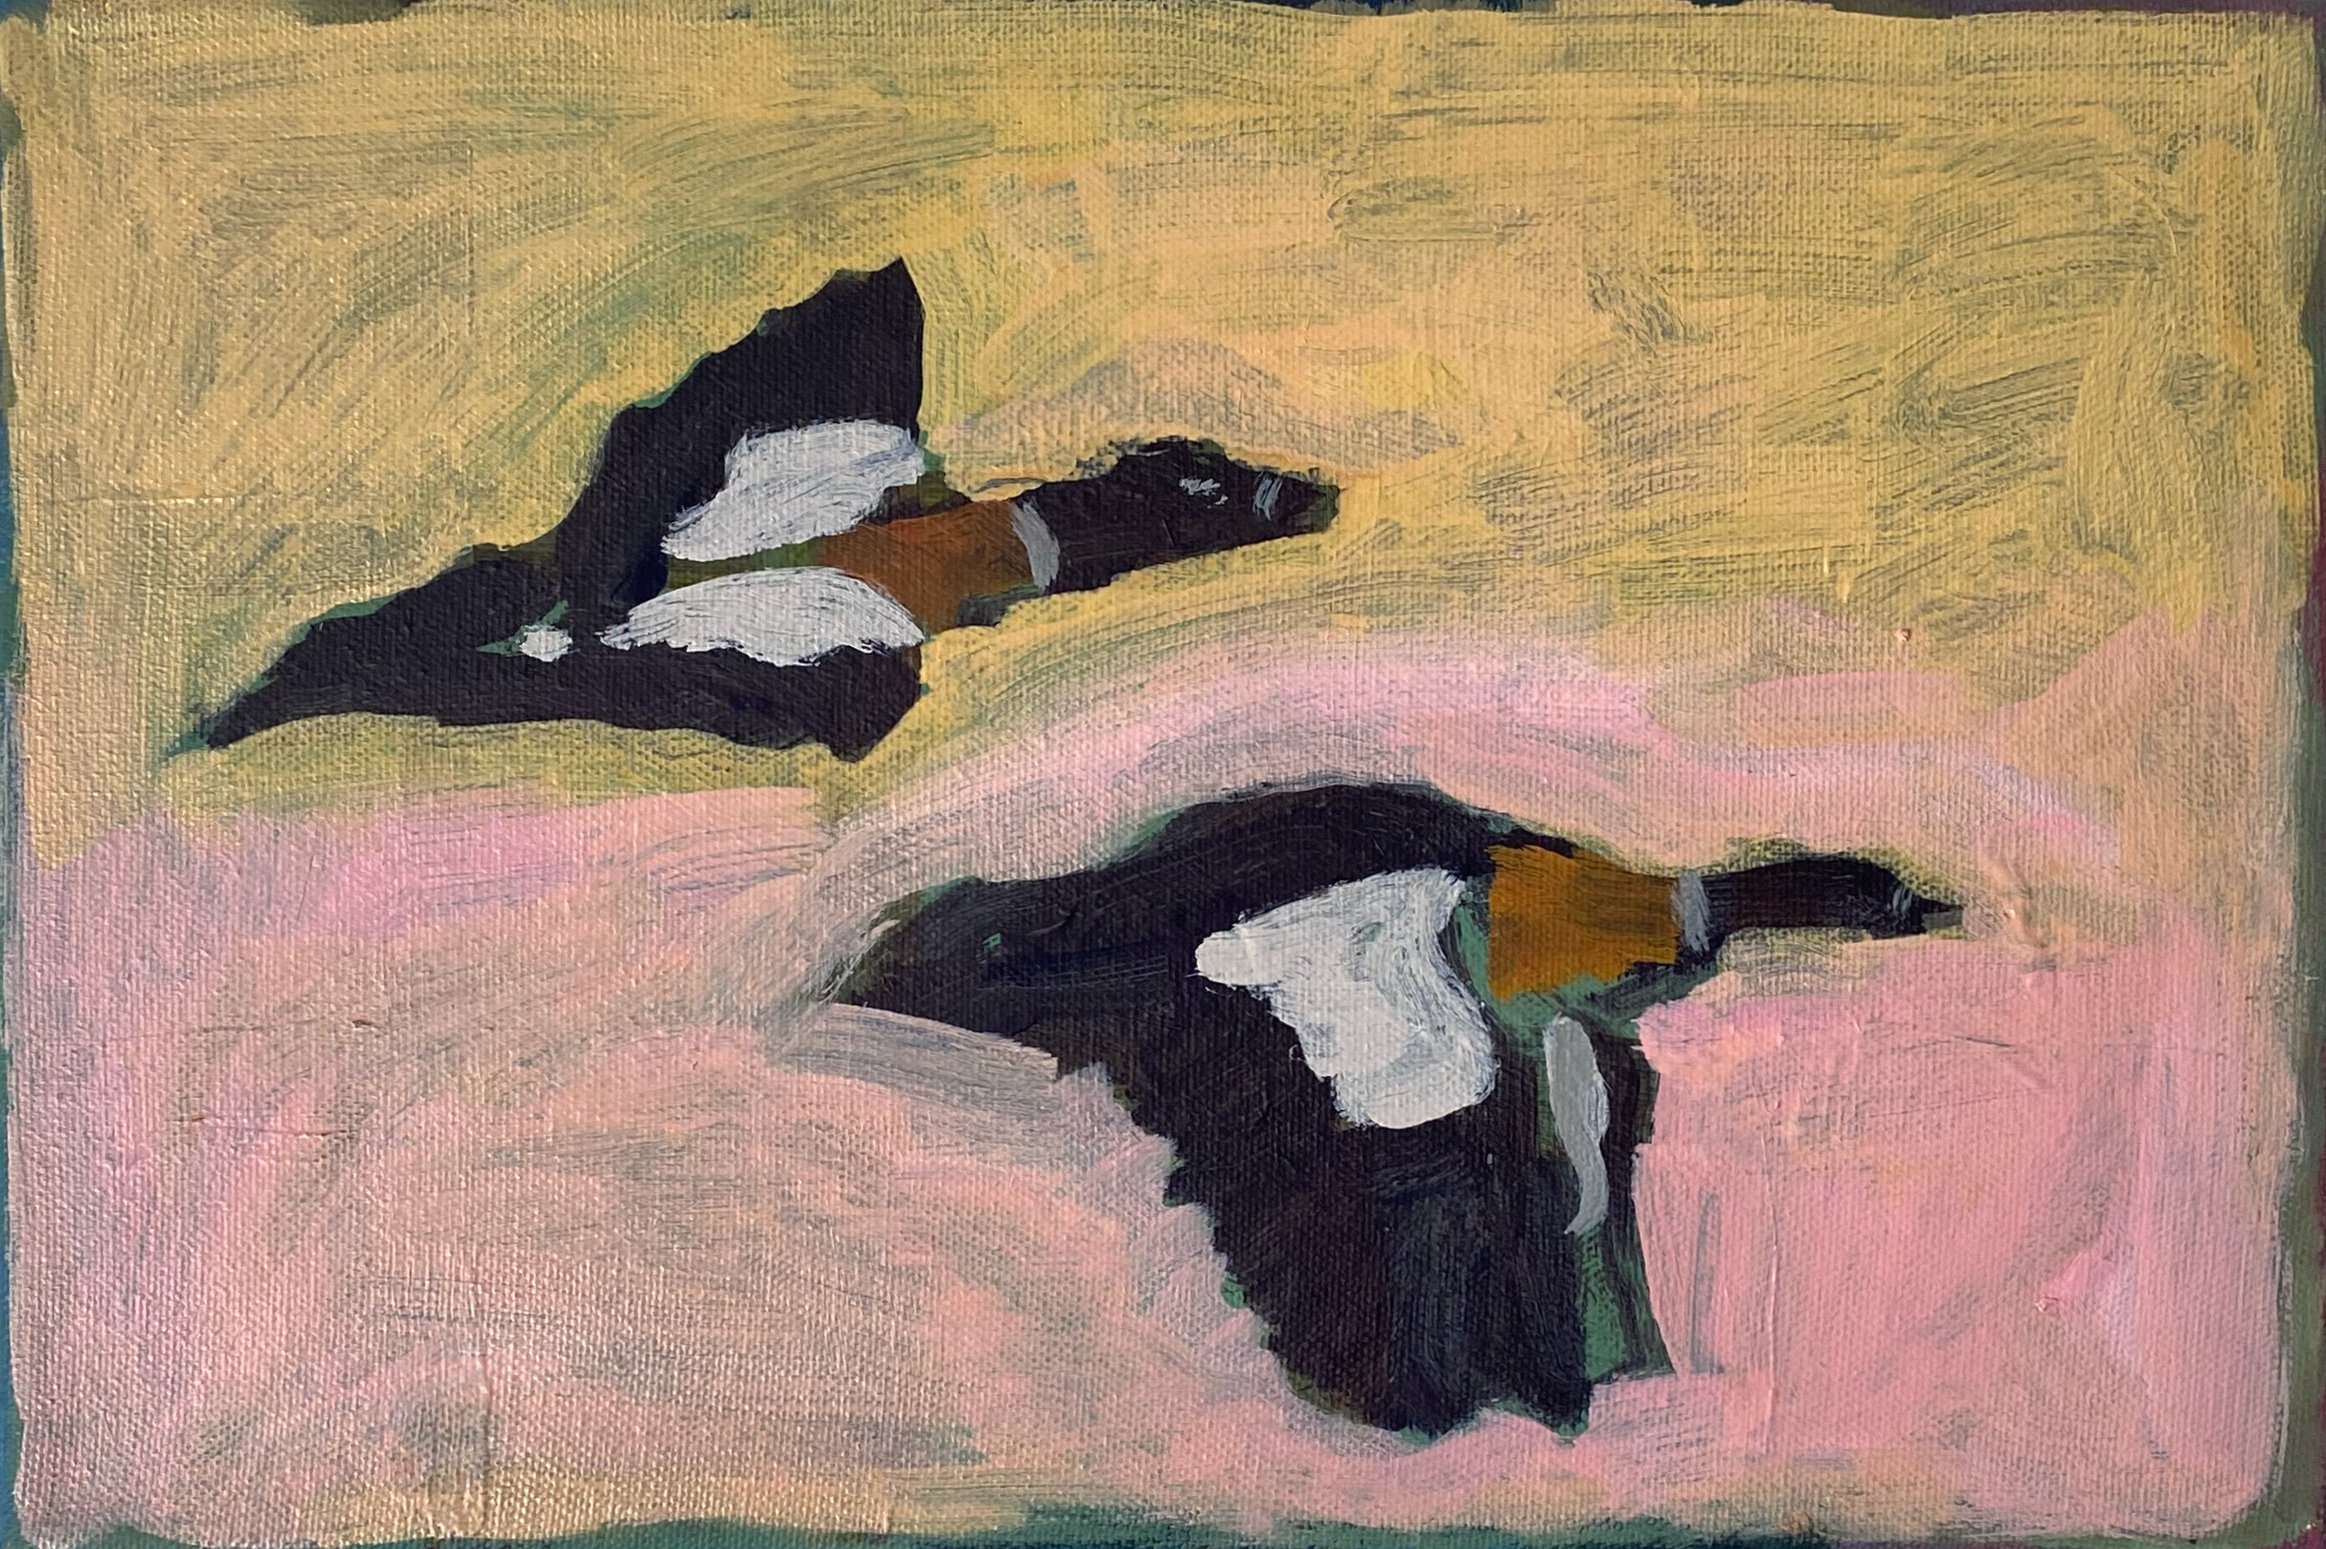 Ducks on the Pond